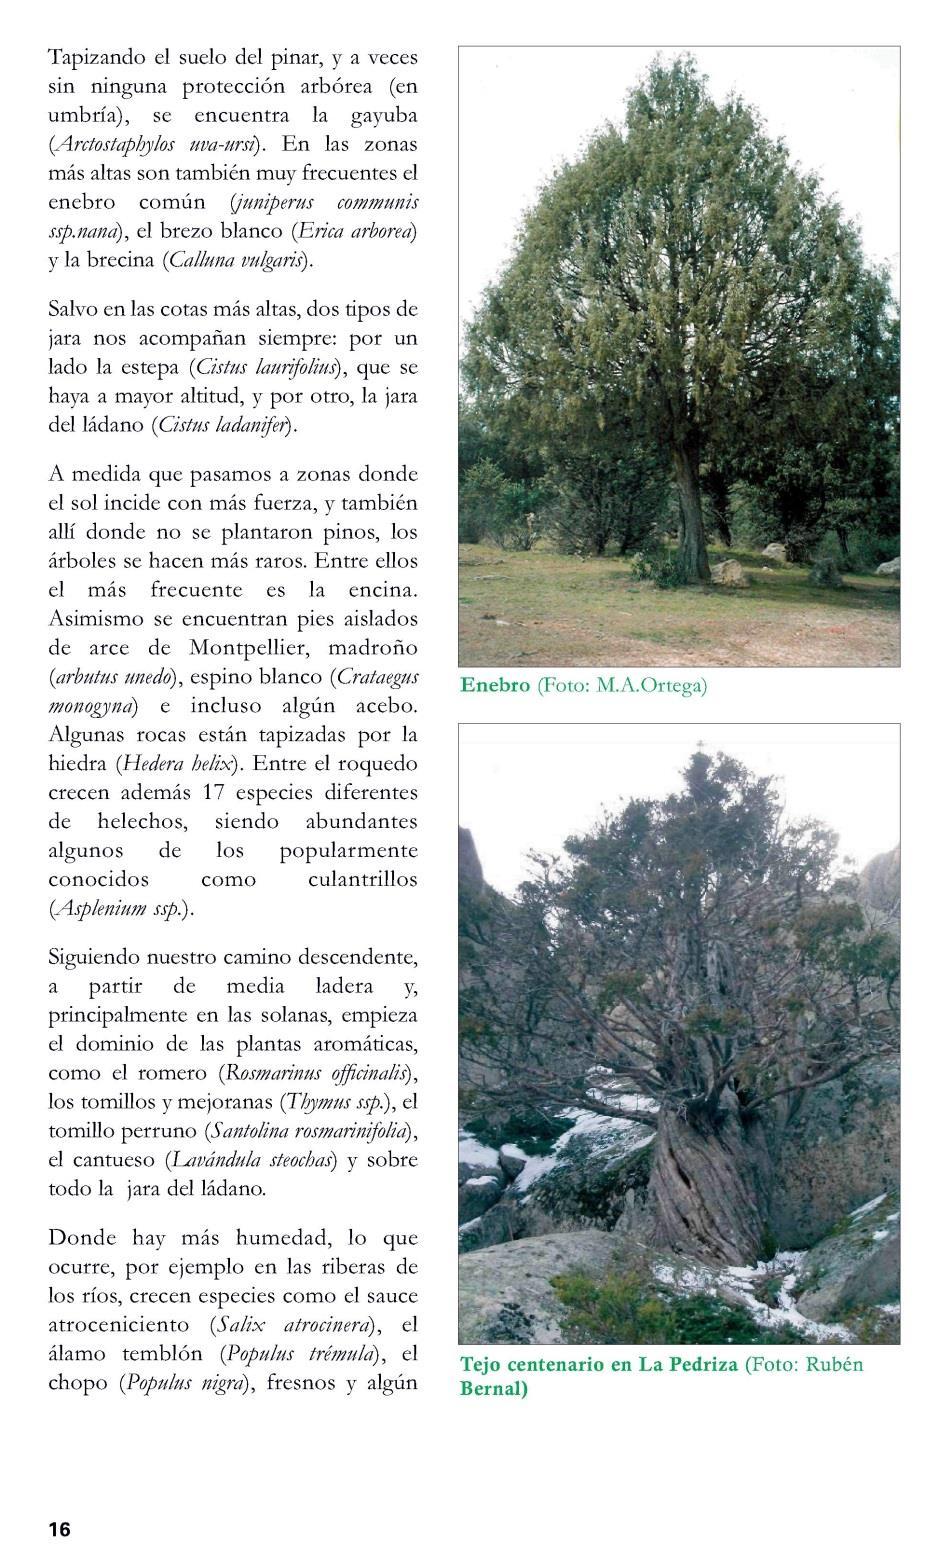 Fuente: https://www.reforesta.es/images/que_hacemos/03_educacion/cuaderno-profesor.